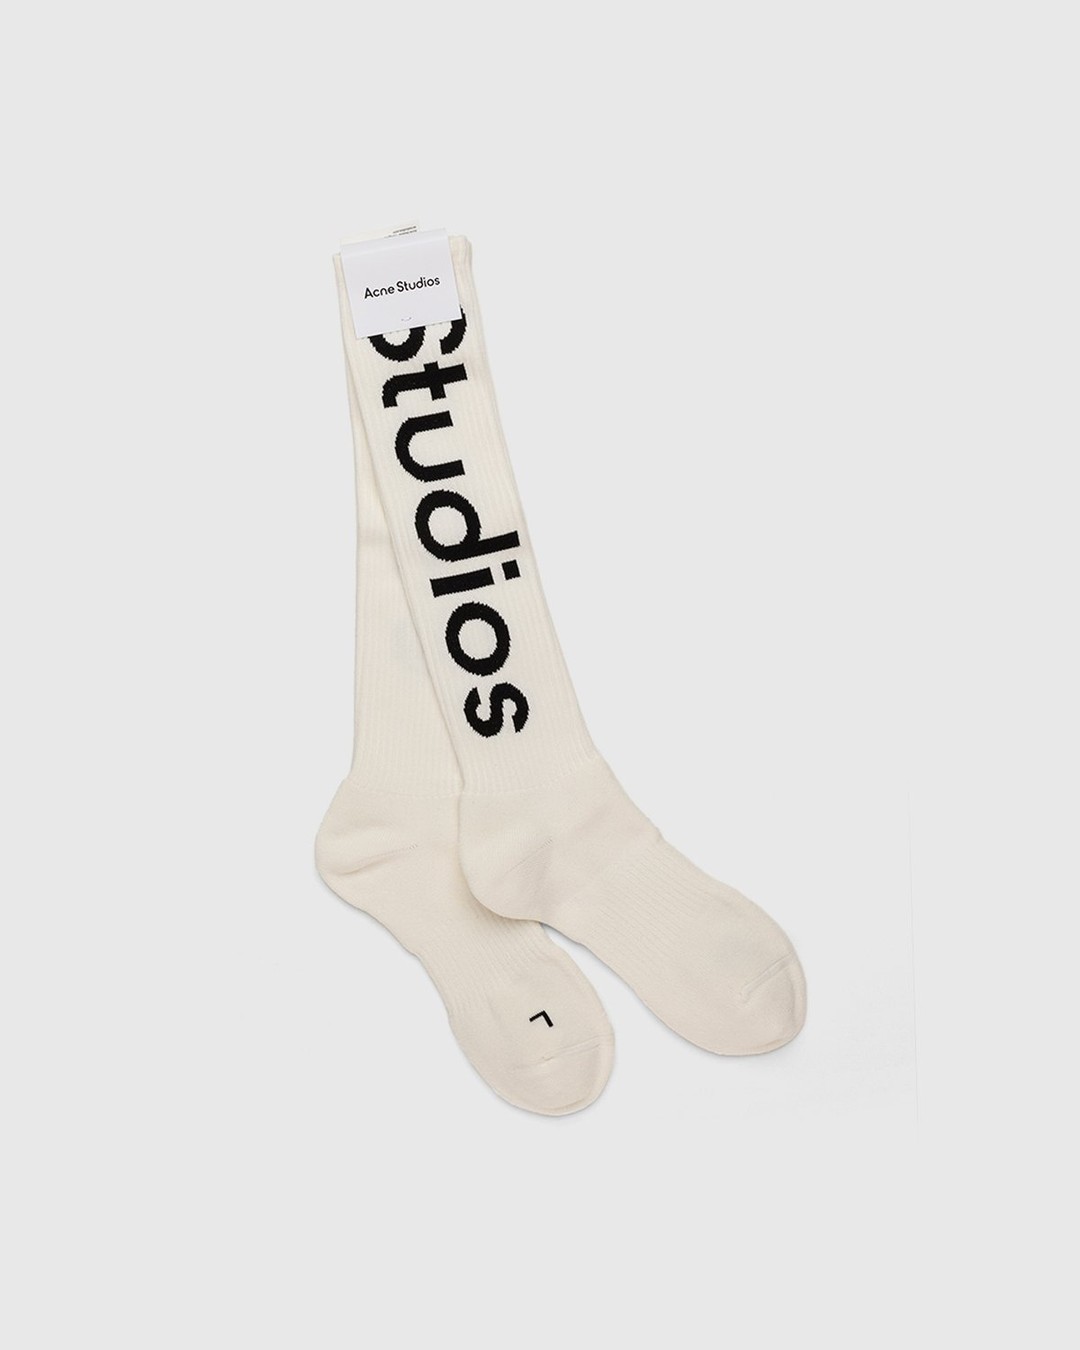 Acne Studios – Logo Socks White | Highsnobiety Shop